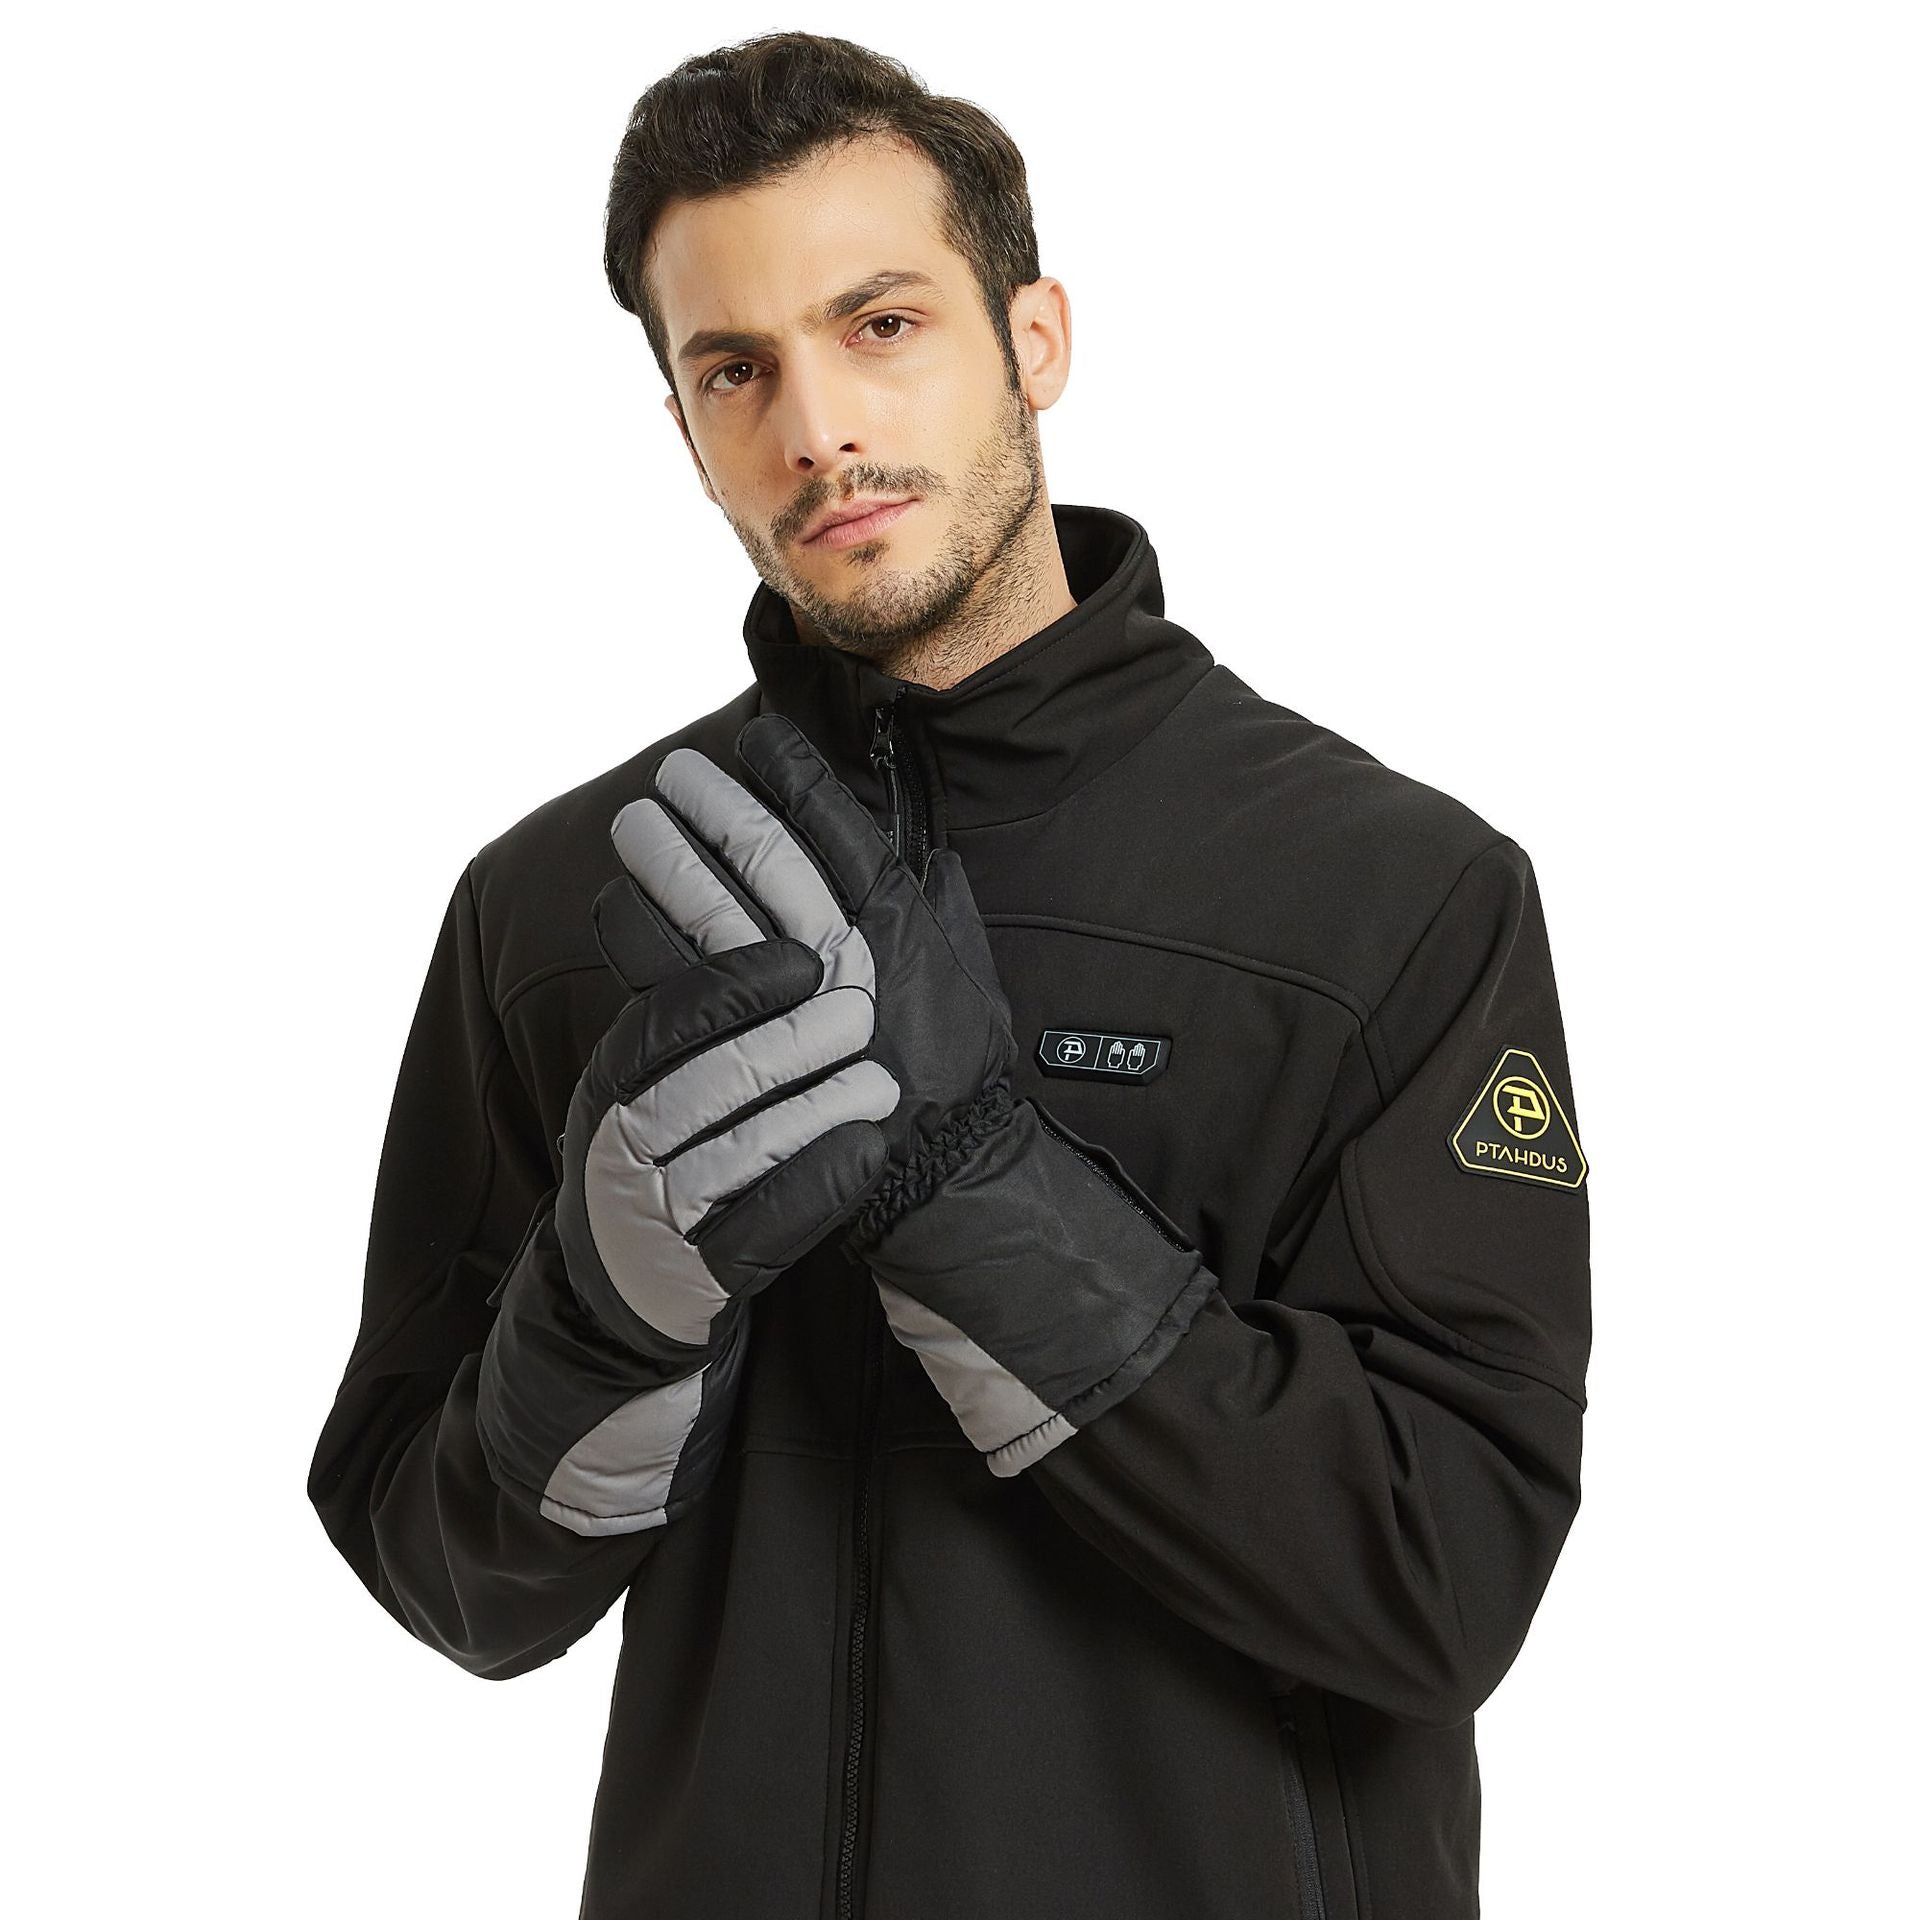 Usb electric five-finger ski gloves - Premium 0 from AdventureParent - Just $103.86! Shop now at AdventureParent